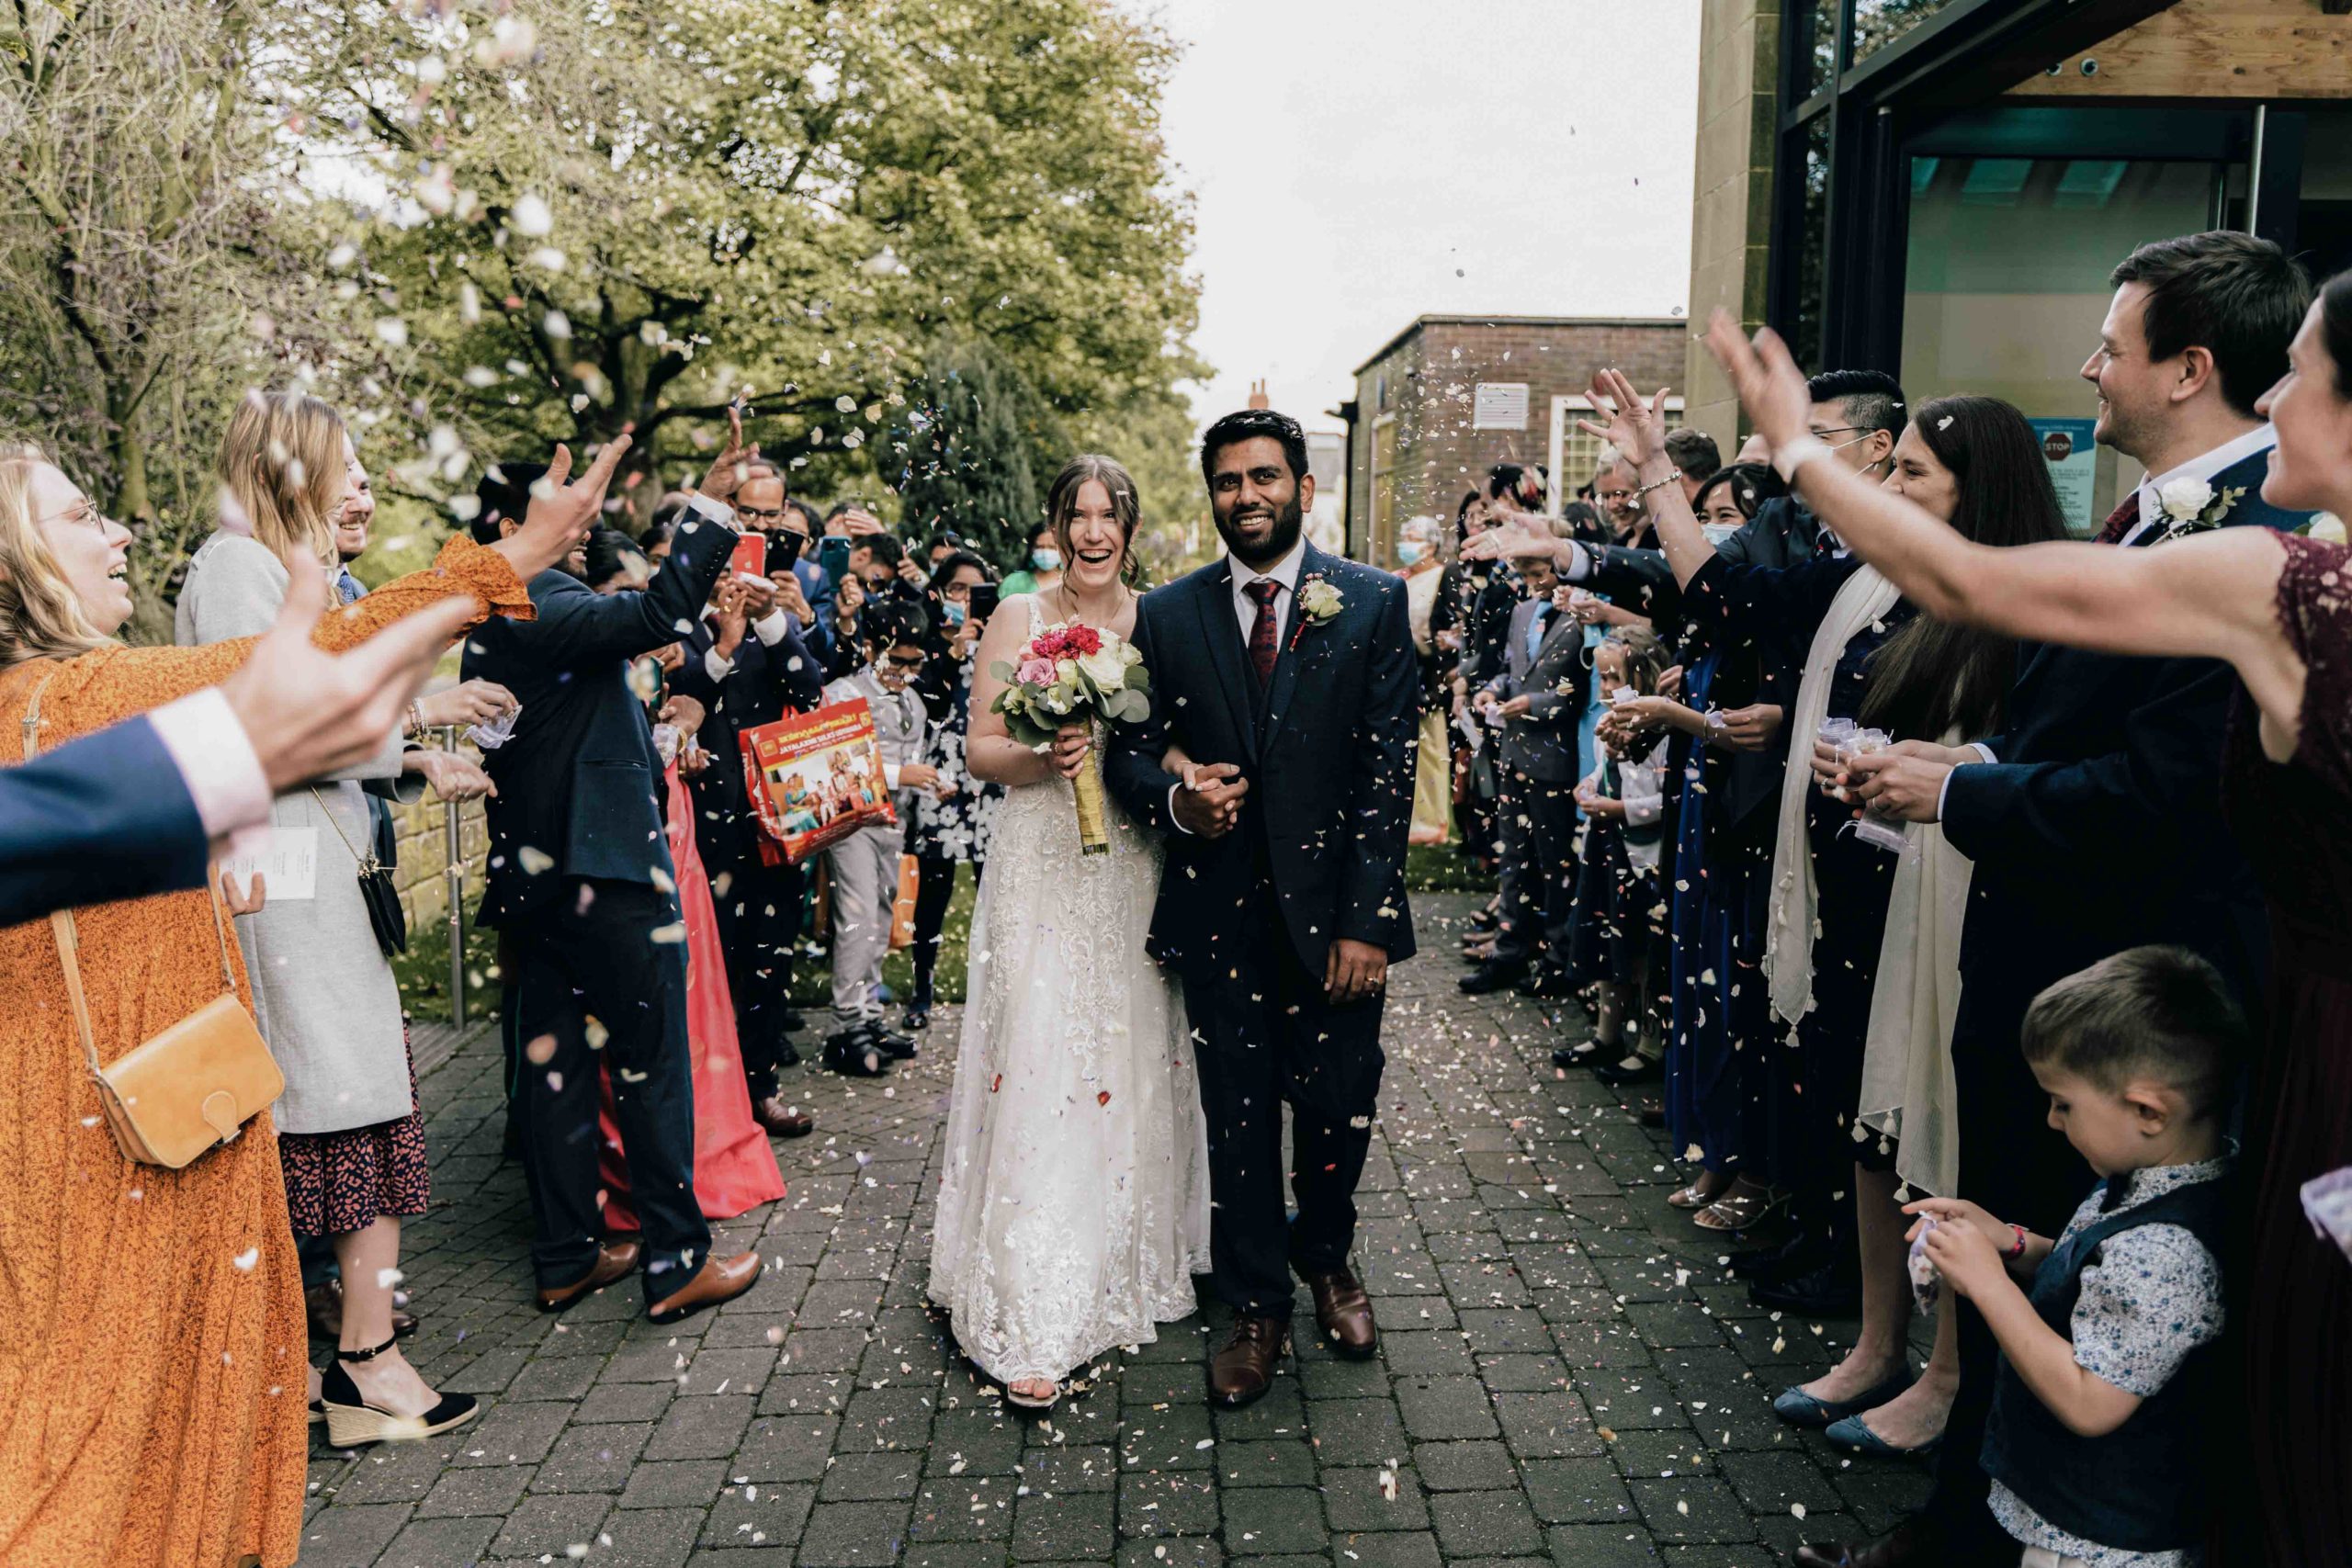 Leeds wedding photographer